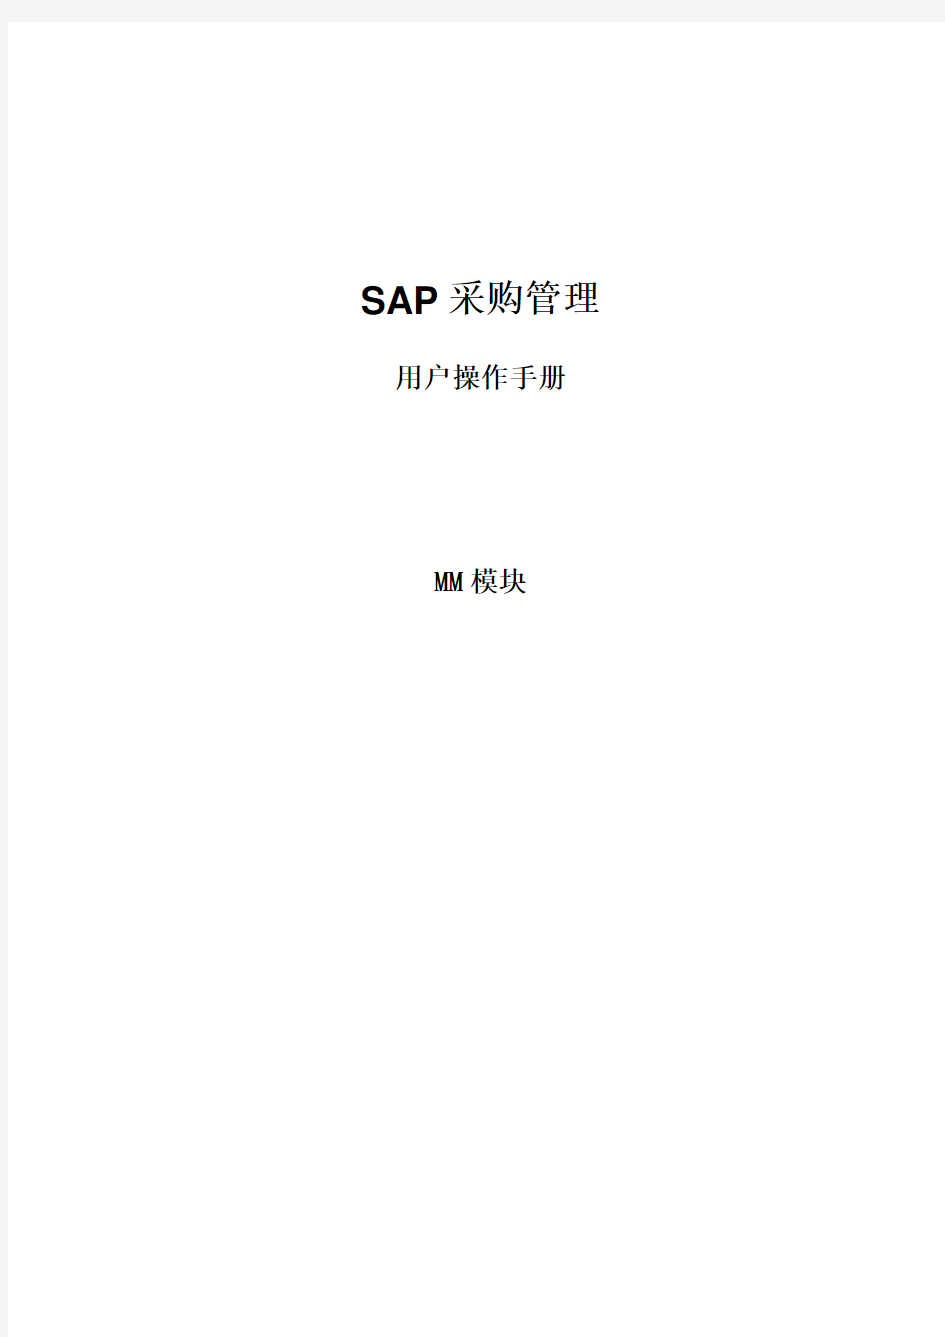 SAP MM模块采购管理操作手册